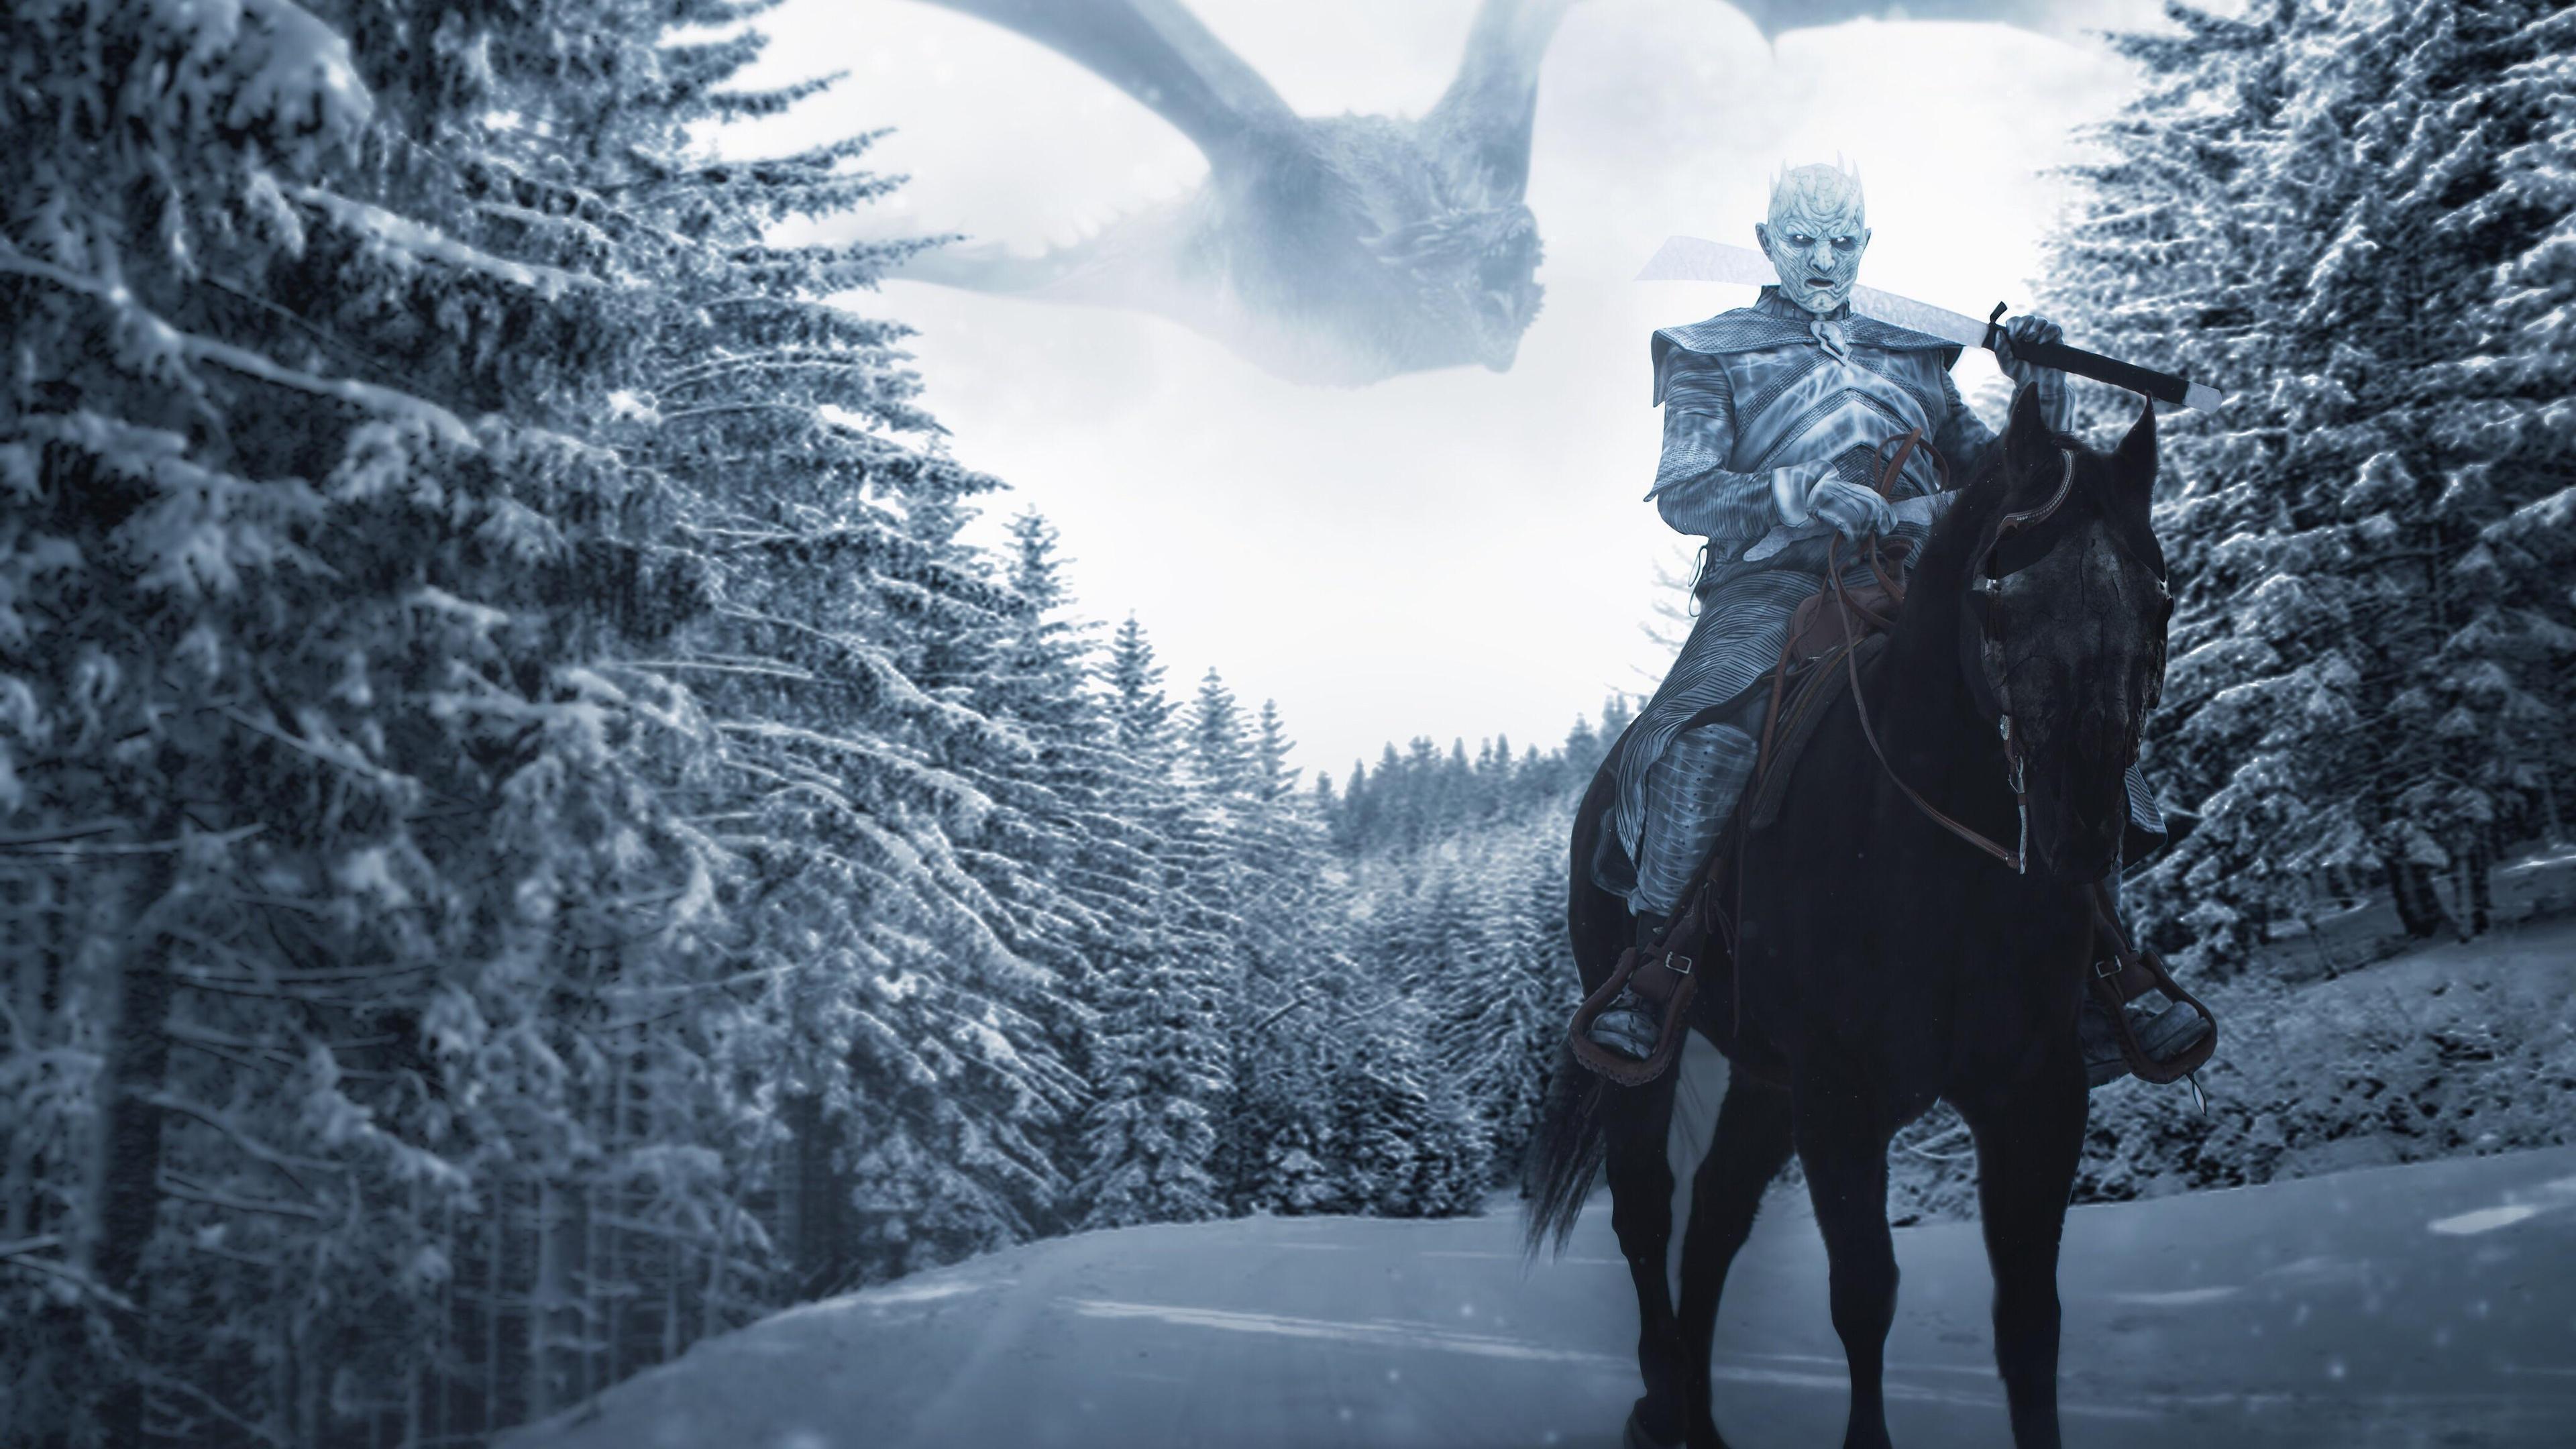 HD wallpaper, Game Of Thrones, 4K, Season 8, Night King